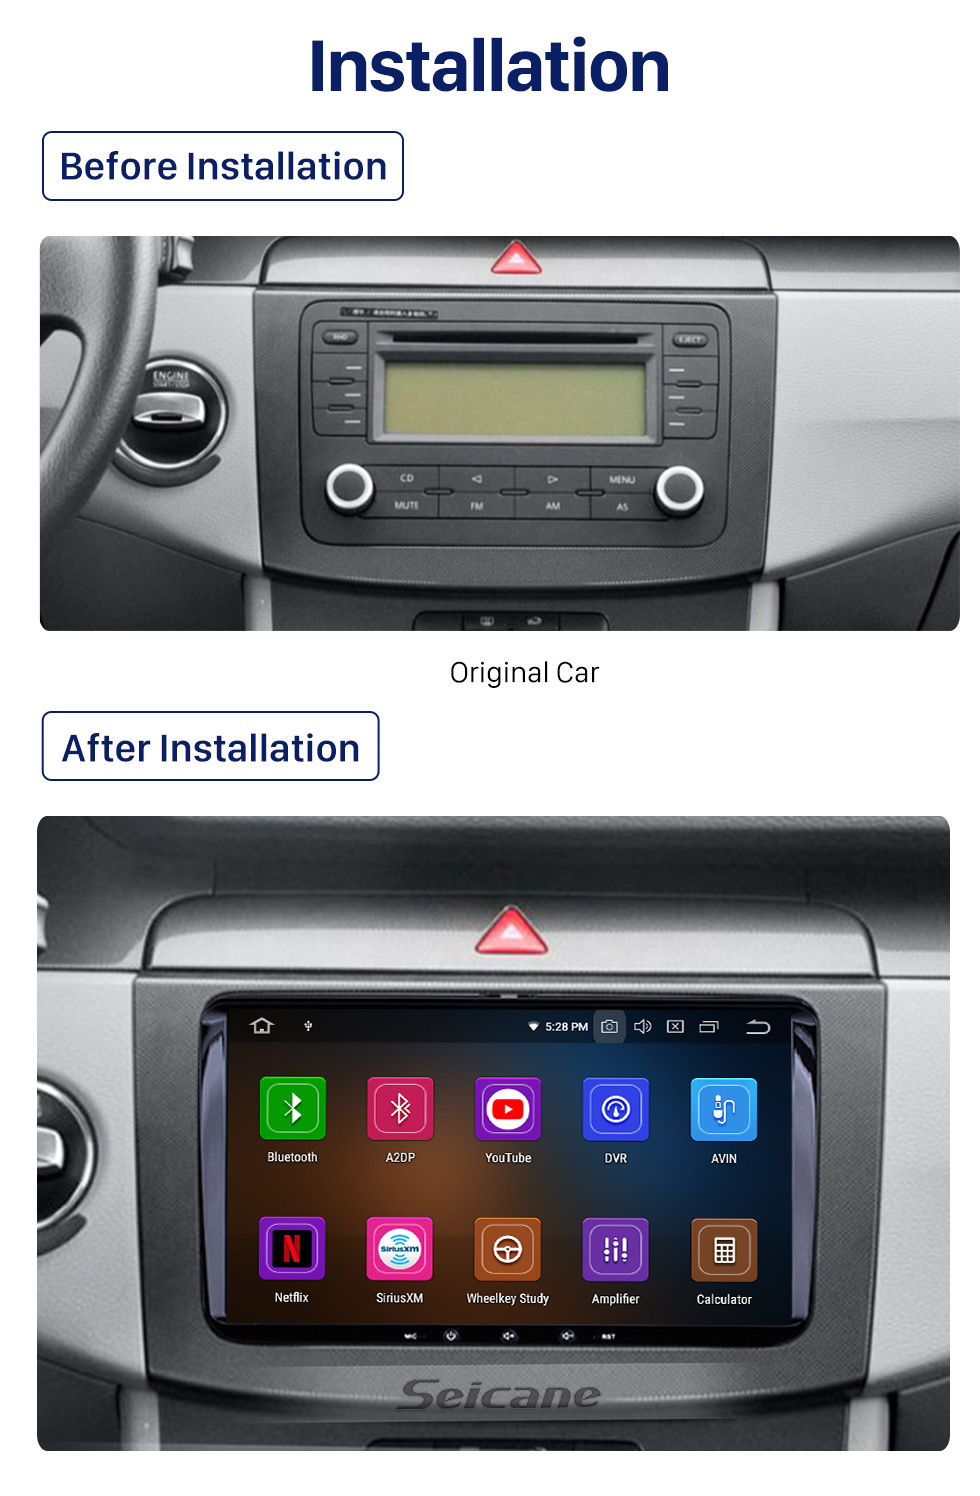 Seicane 2006-2013 Skoda Praktik Android 10.0 Navegação GPS Car DVD Player Sistema de Suporte Retrovisor Câmera Bluetooth Rádio LinkMirror OBD2 DVR 3G WiFi HD tela sensível ao toque